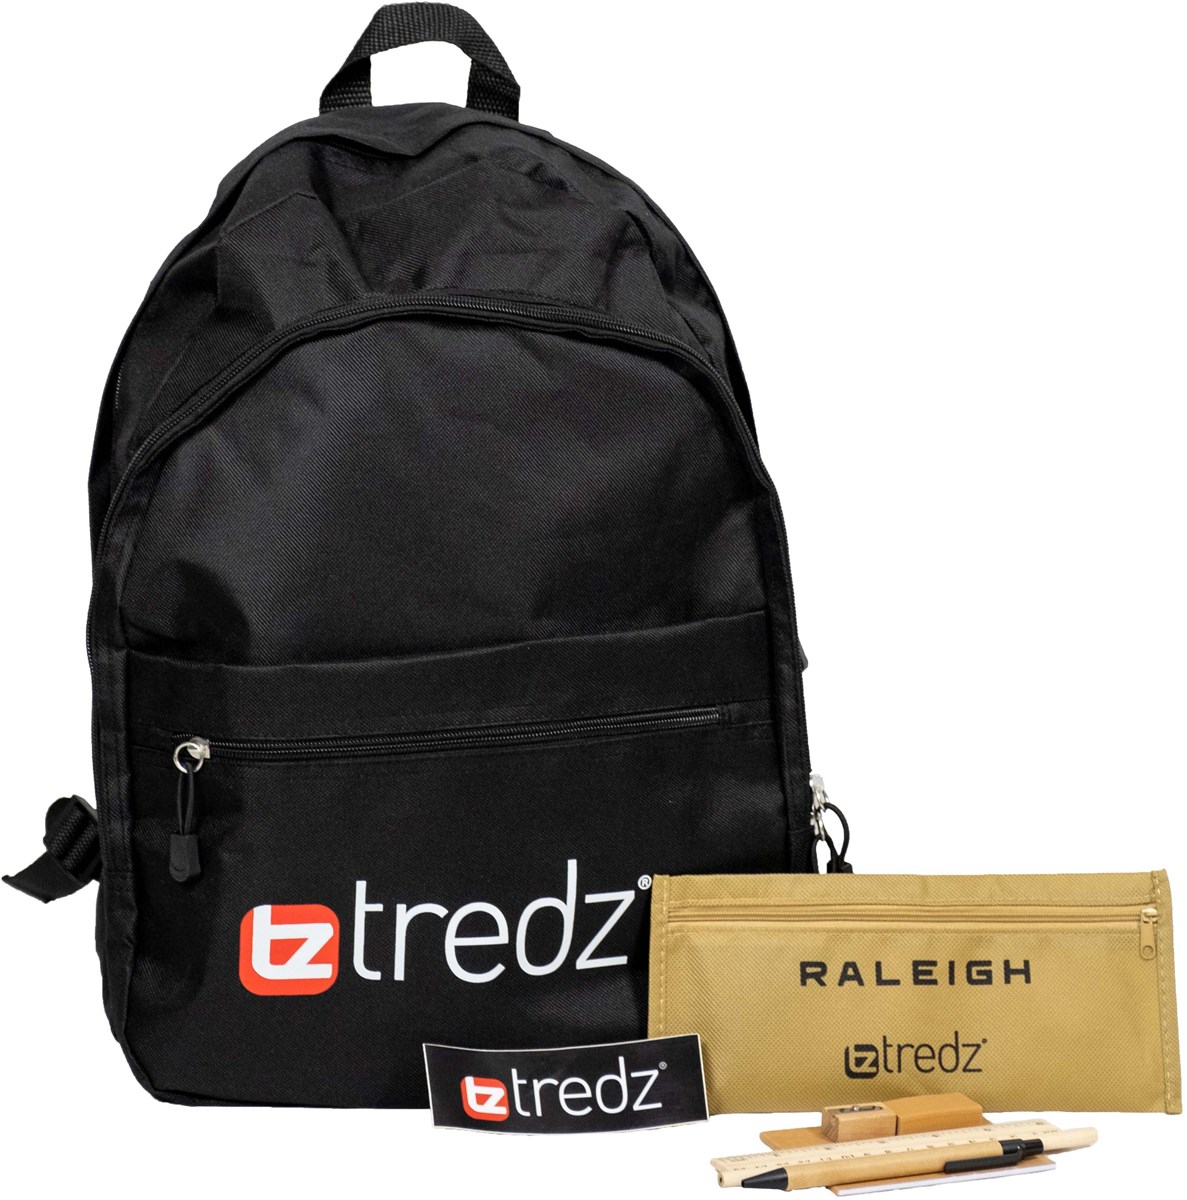 Tredz Kids Backpack product image